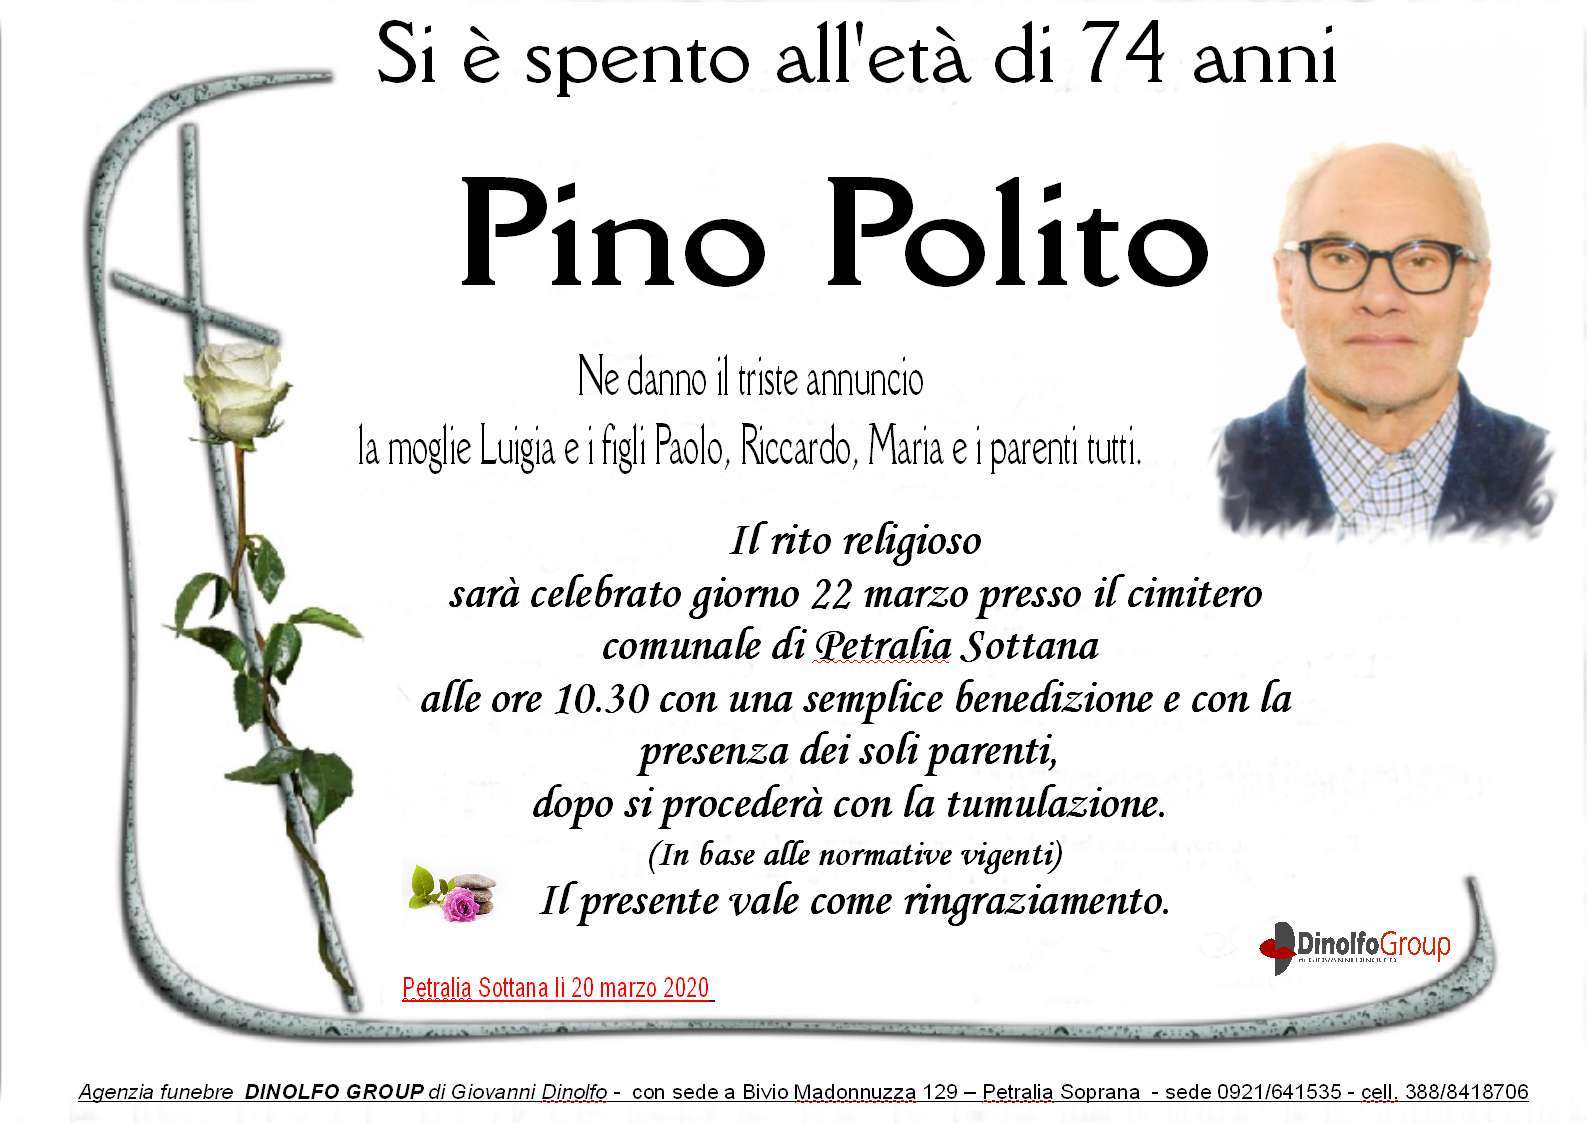 Pino Polito